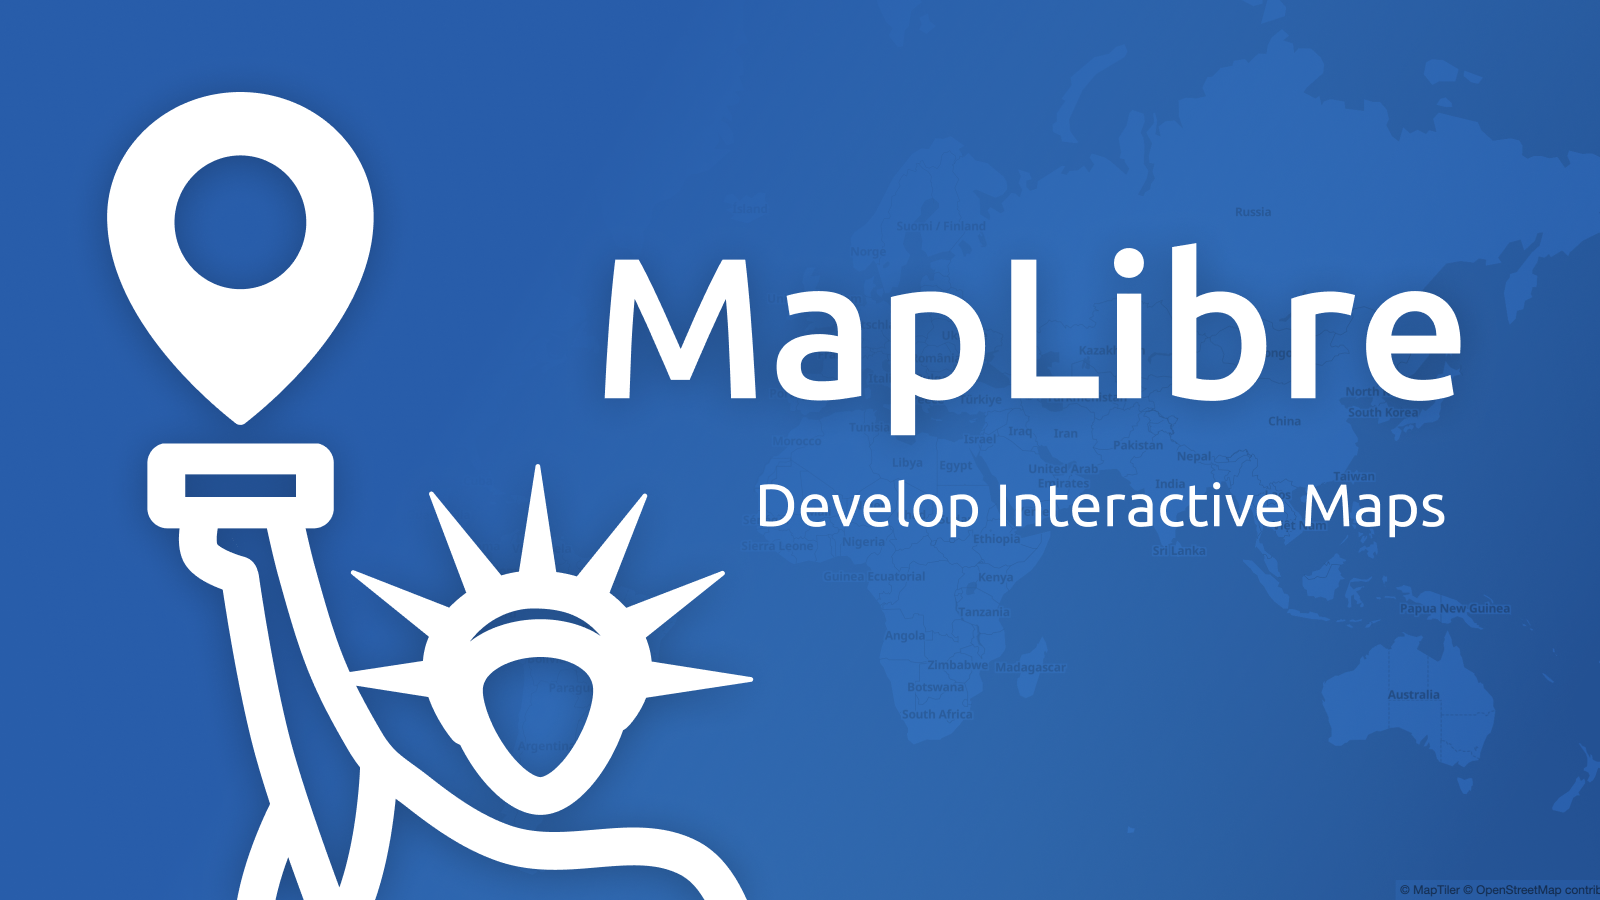 MapLibre News Article